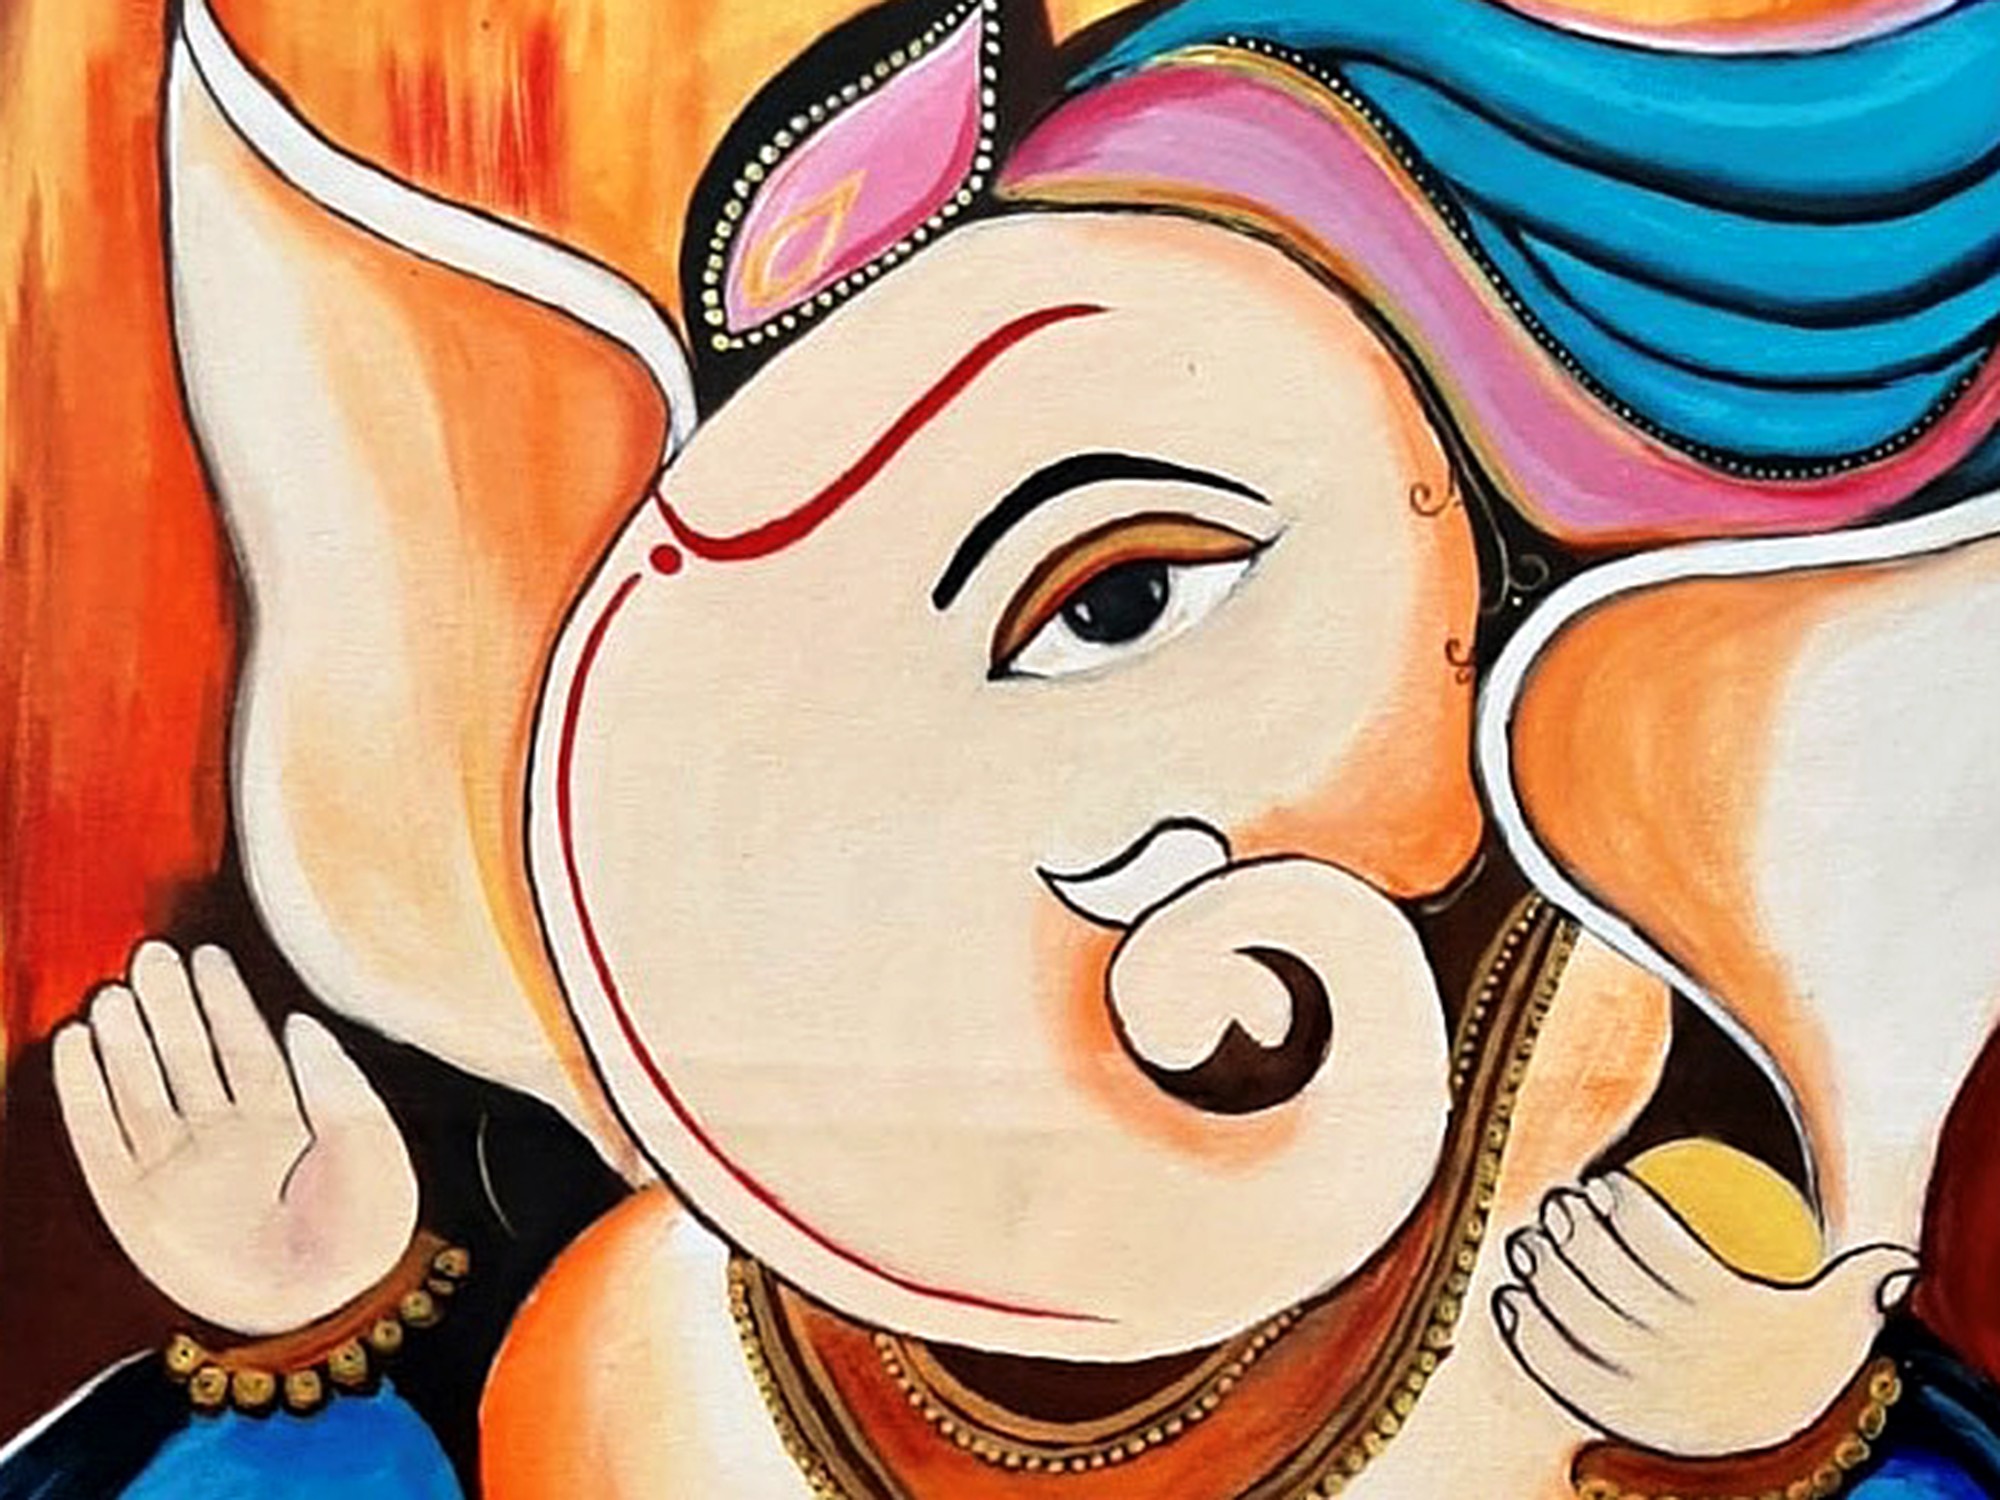 Lord Ganesha color pencil drawing. | Lord Ganesha pencil drawing - Ganpati  Bappa color pencil drawing #lordganesha #ganesha #ganeshaart  #ganeshapainting #bappa #bappamorya #ganeshji... | By ART TubeFacebook